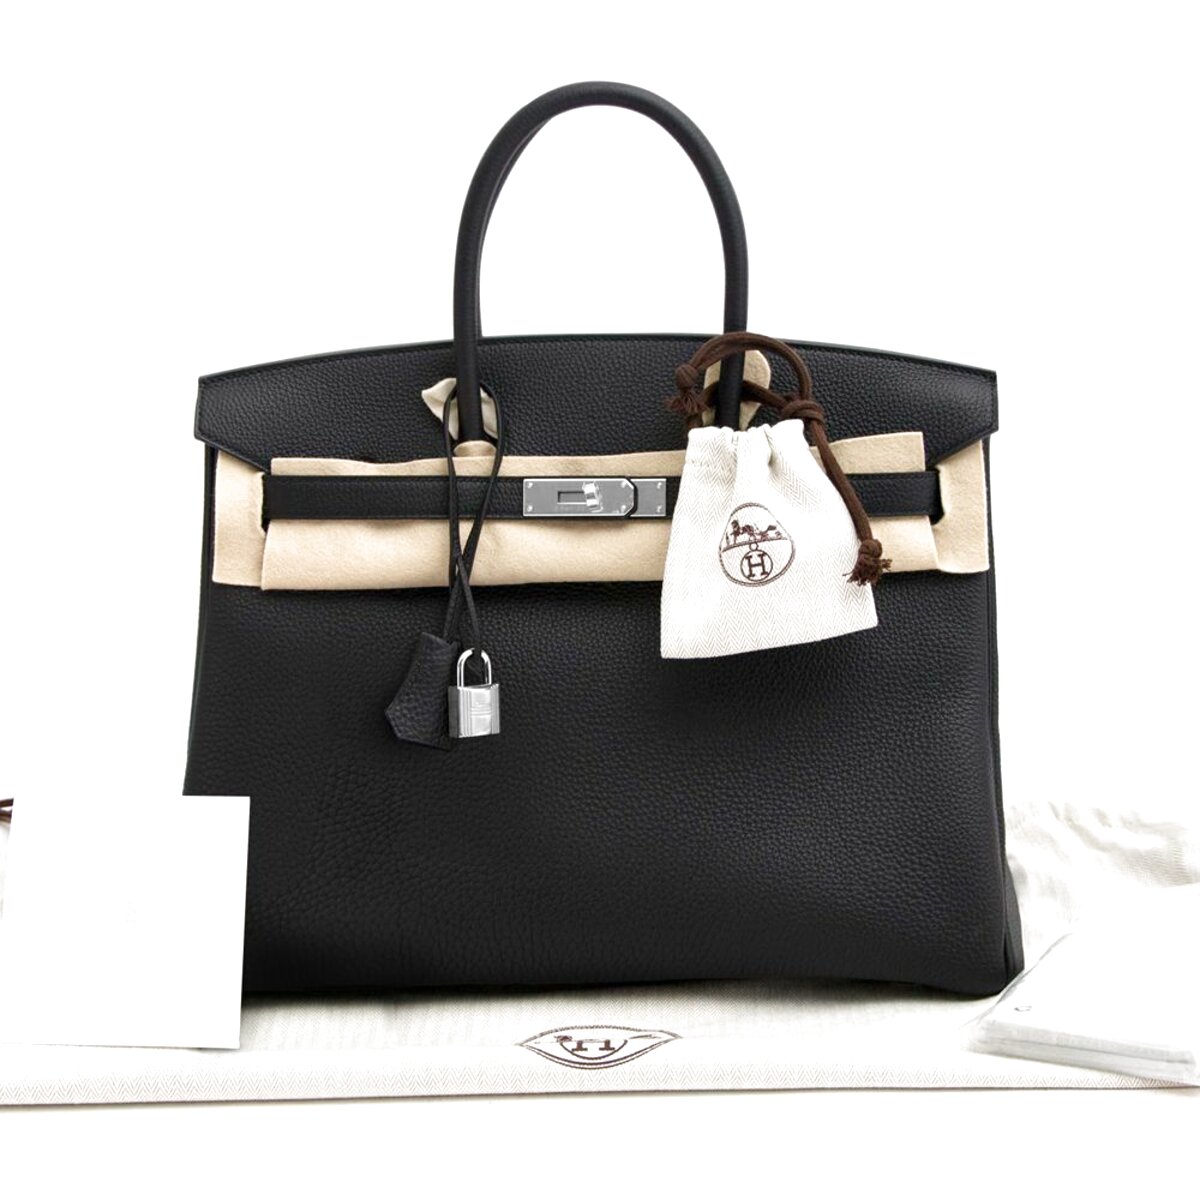 Hermes Handbags for sale in UK | 59 used Hermes Handbags